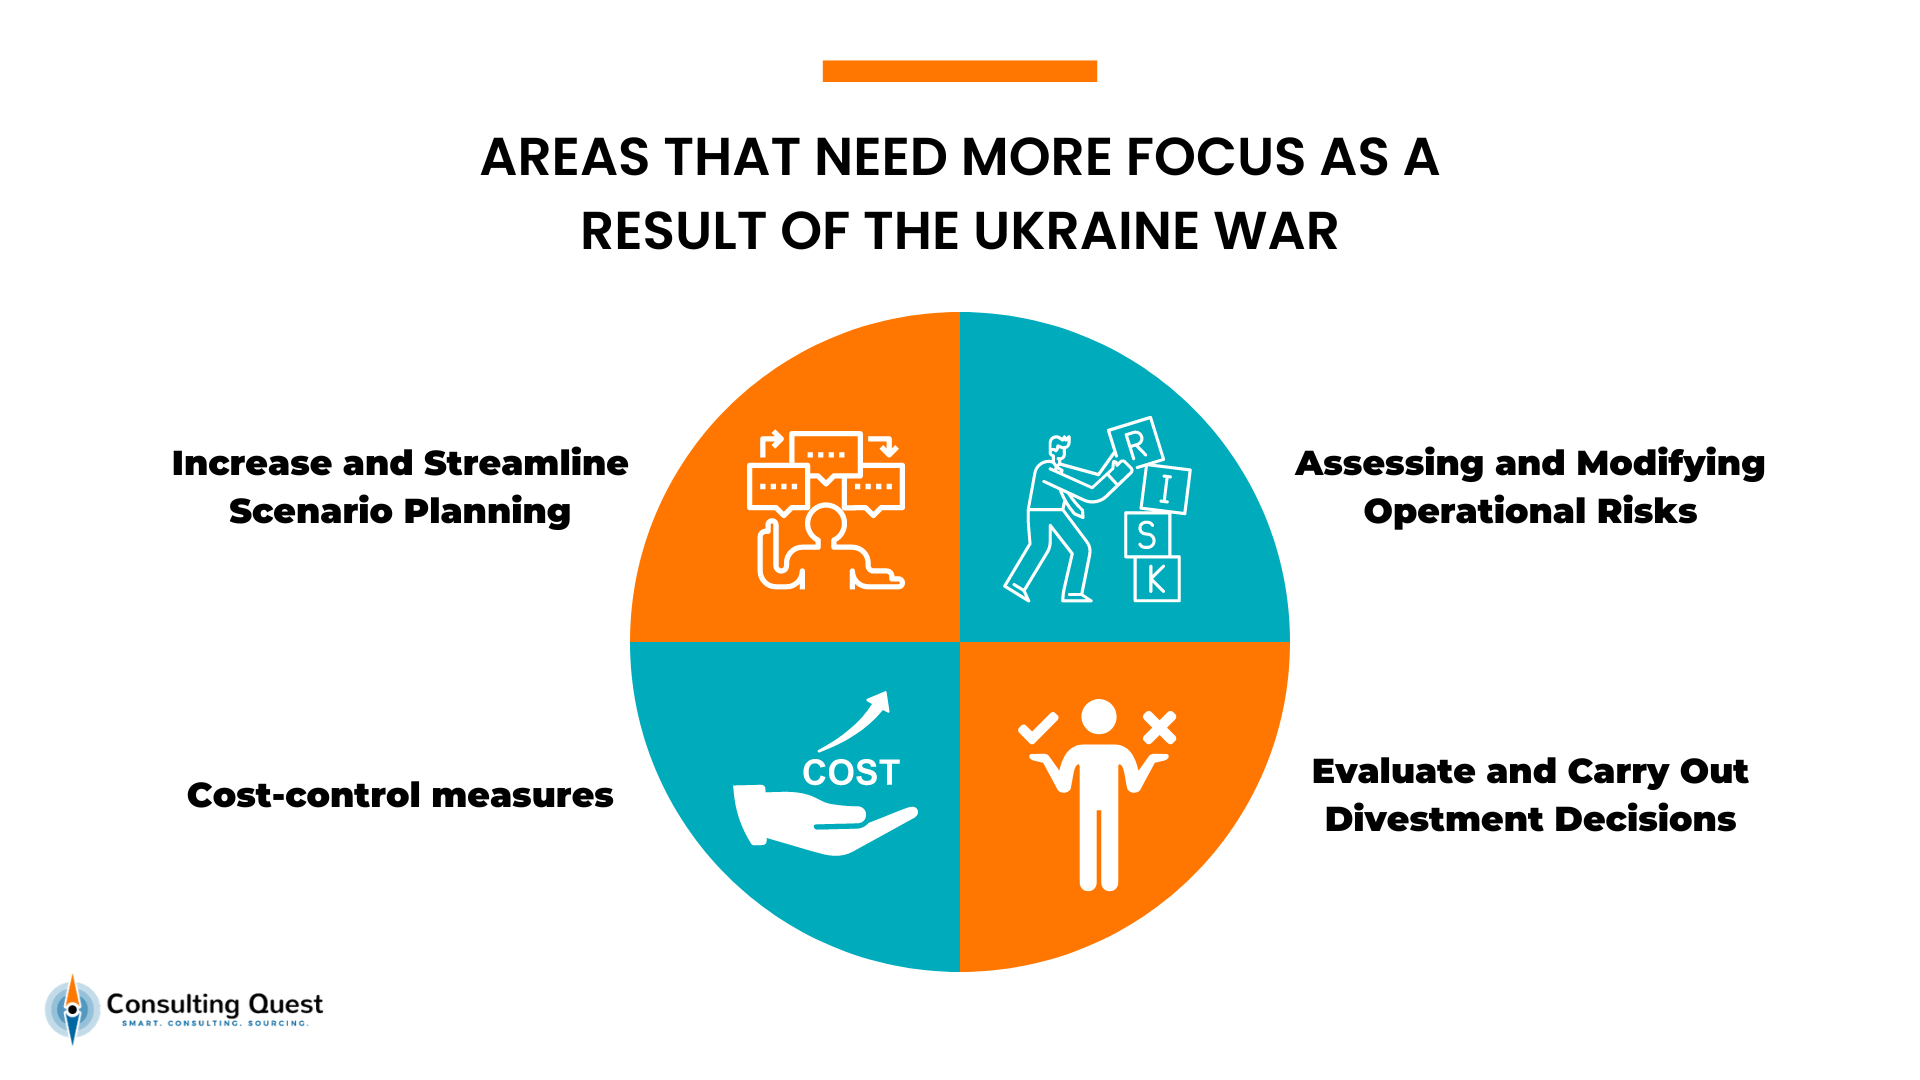 Les domaines qui nécessitent plus d'attention en raison de la guerre en Ukraine